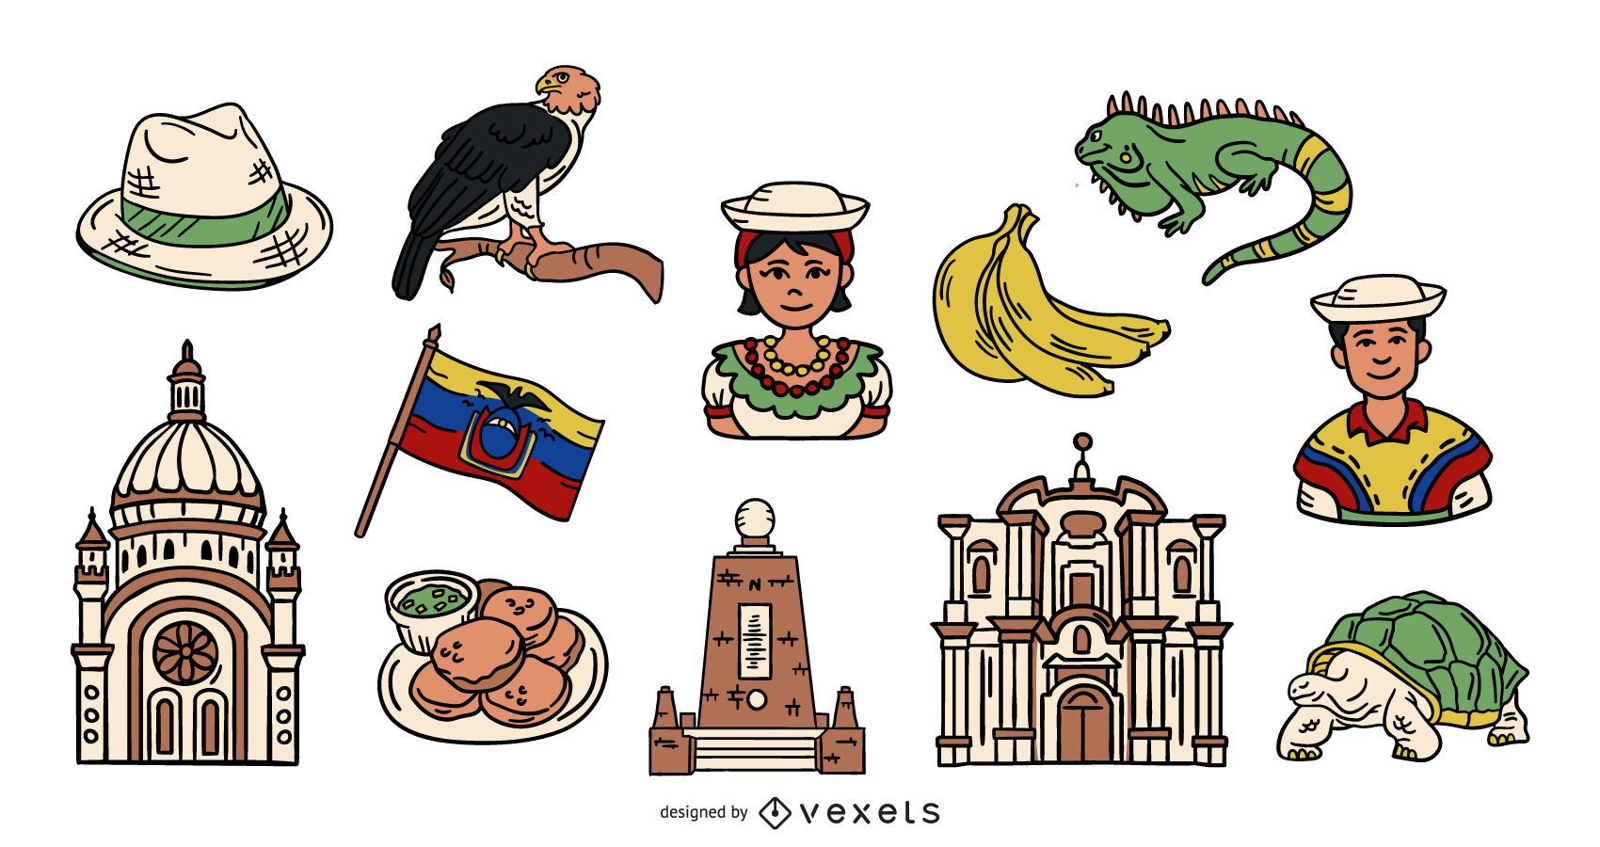 Pacote de elementos ilustrados coloridos do Equador